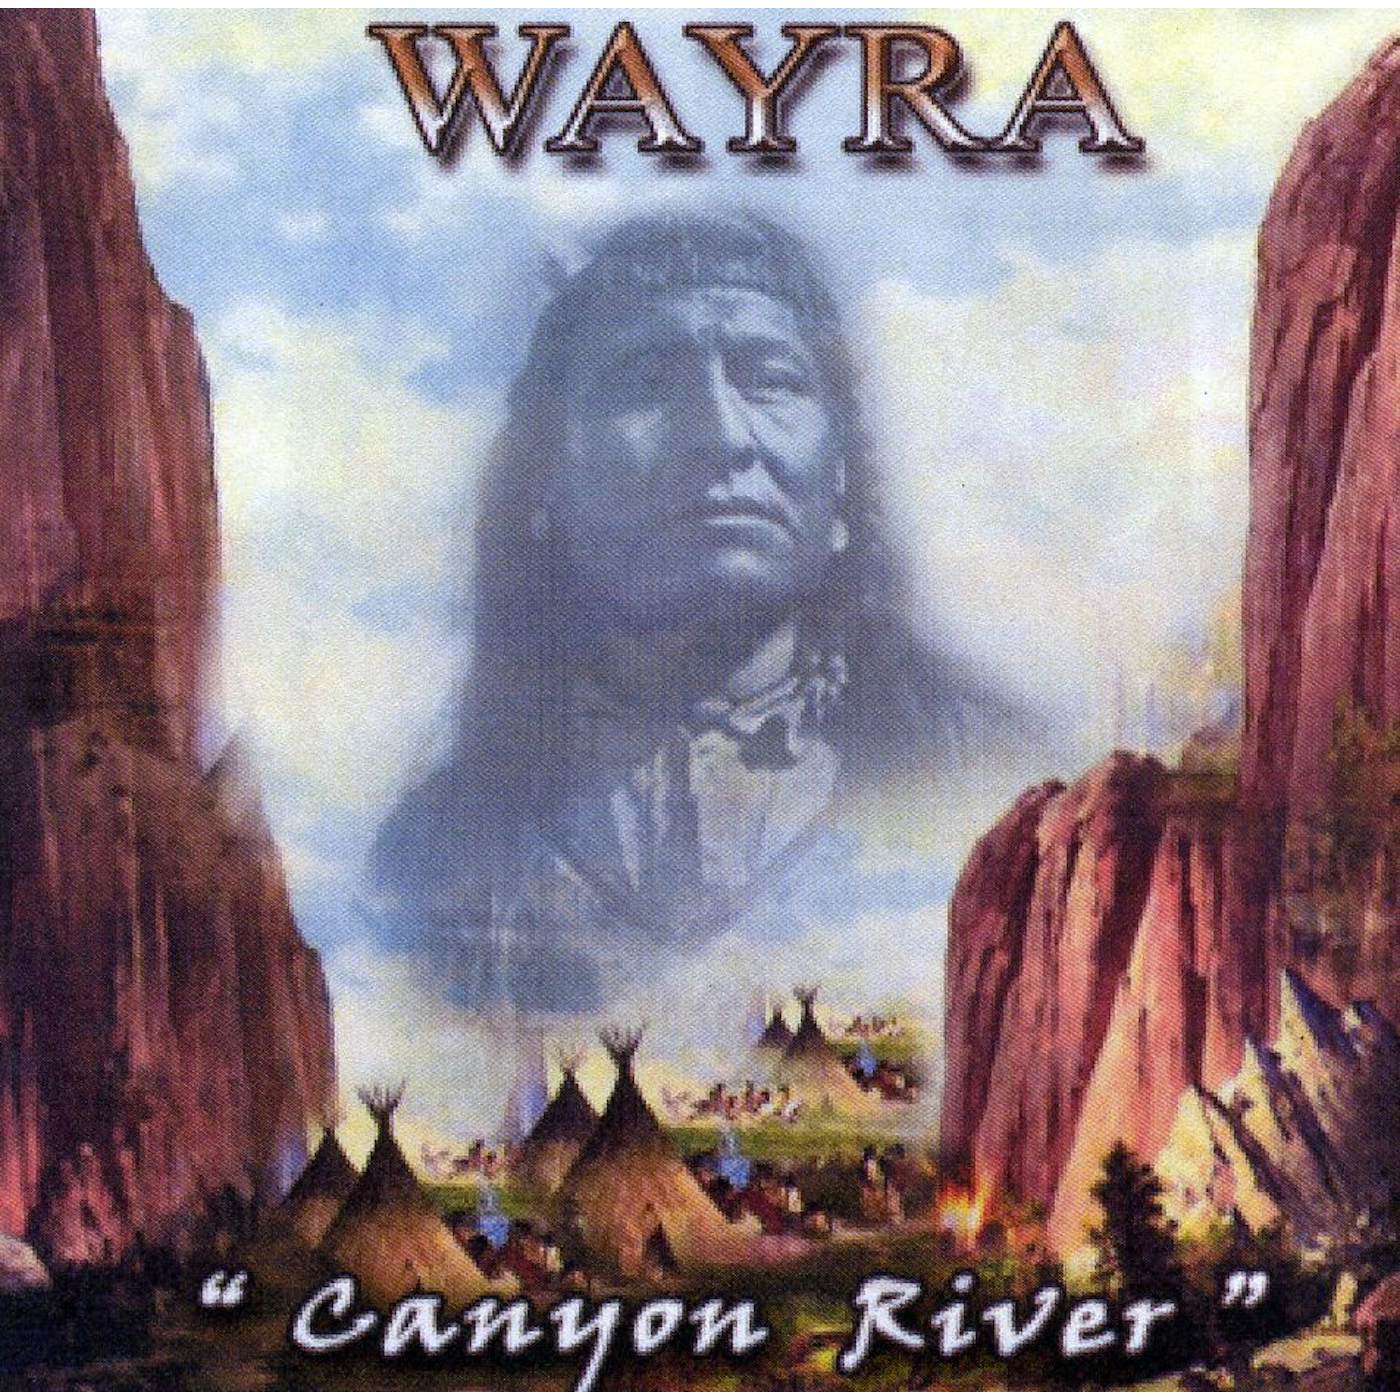 Wayra CANYON RIVER CD